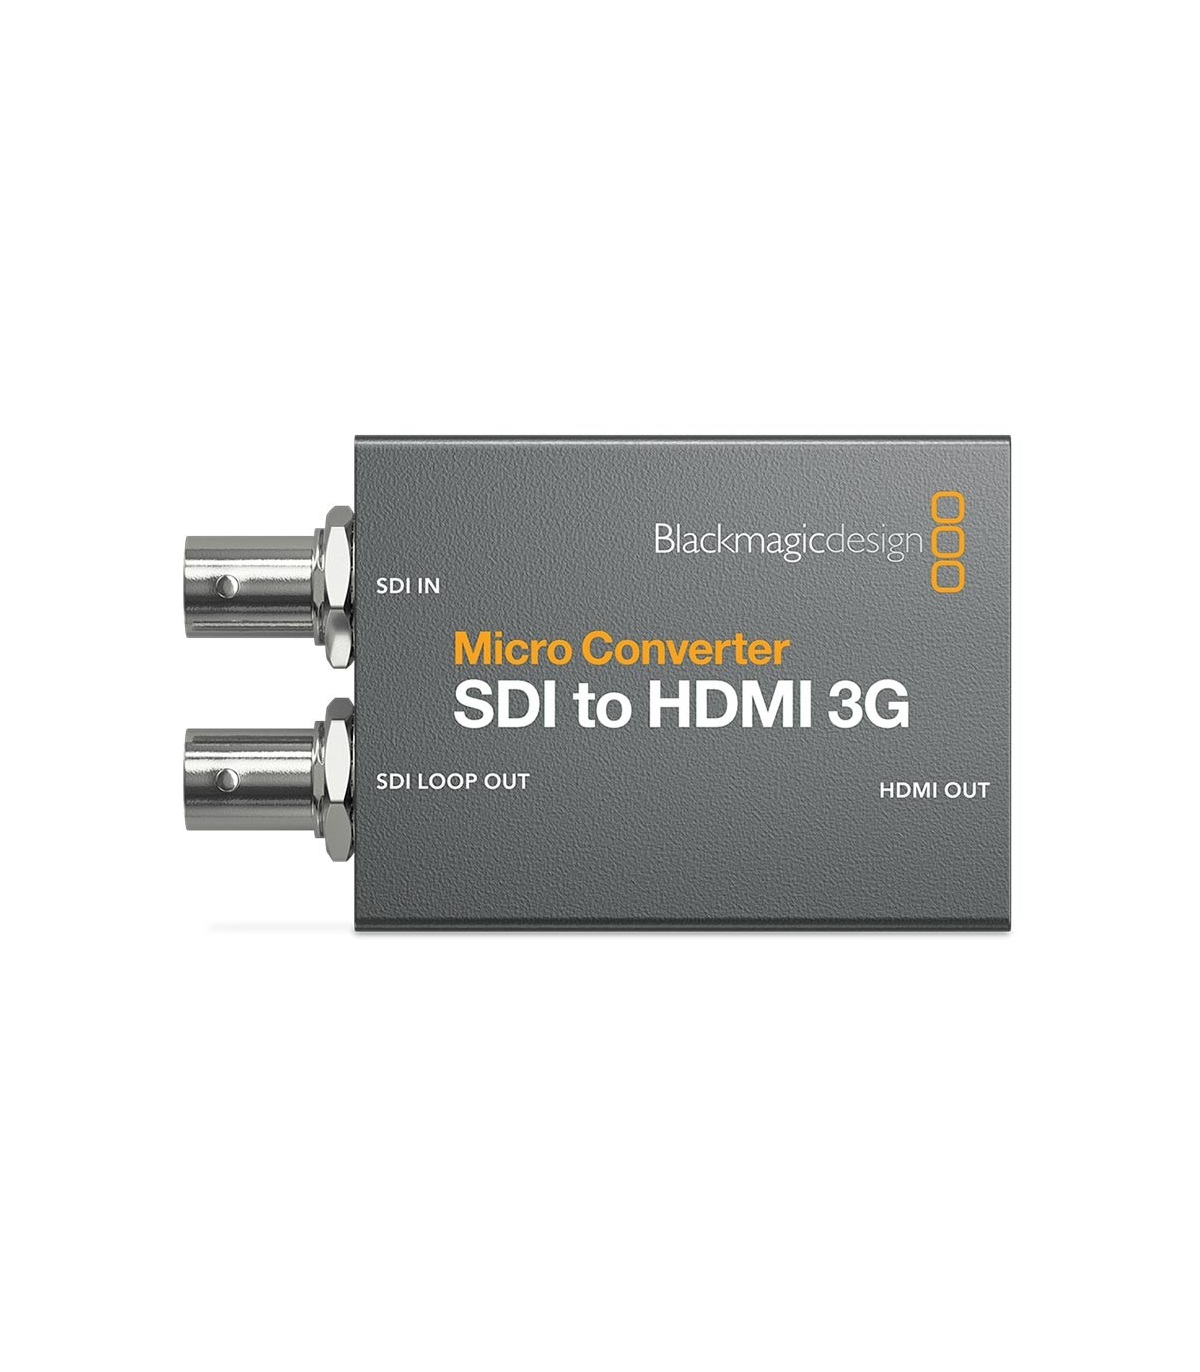 میکرو کانورتر بلک مجیک SDI to HDMI 3G